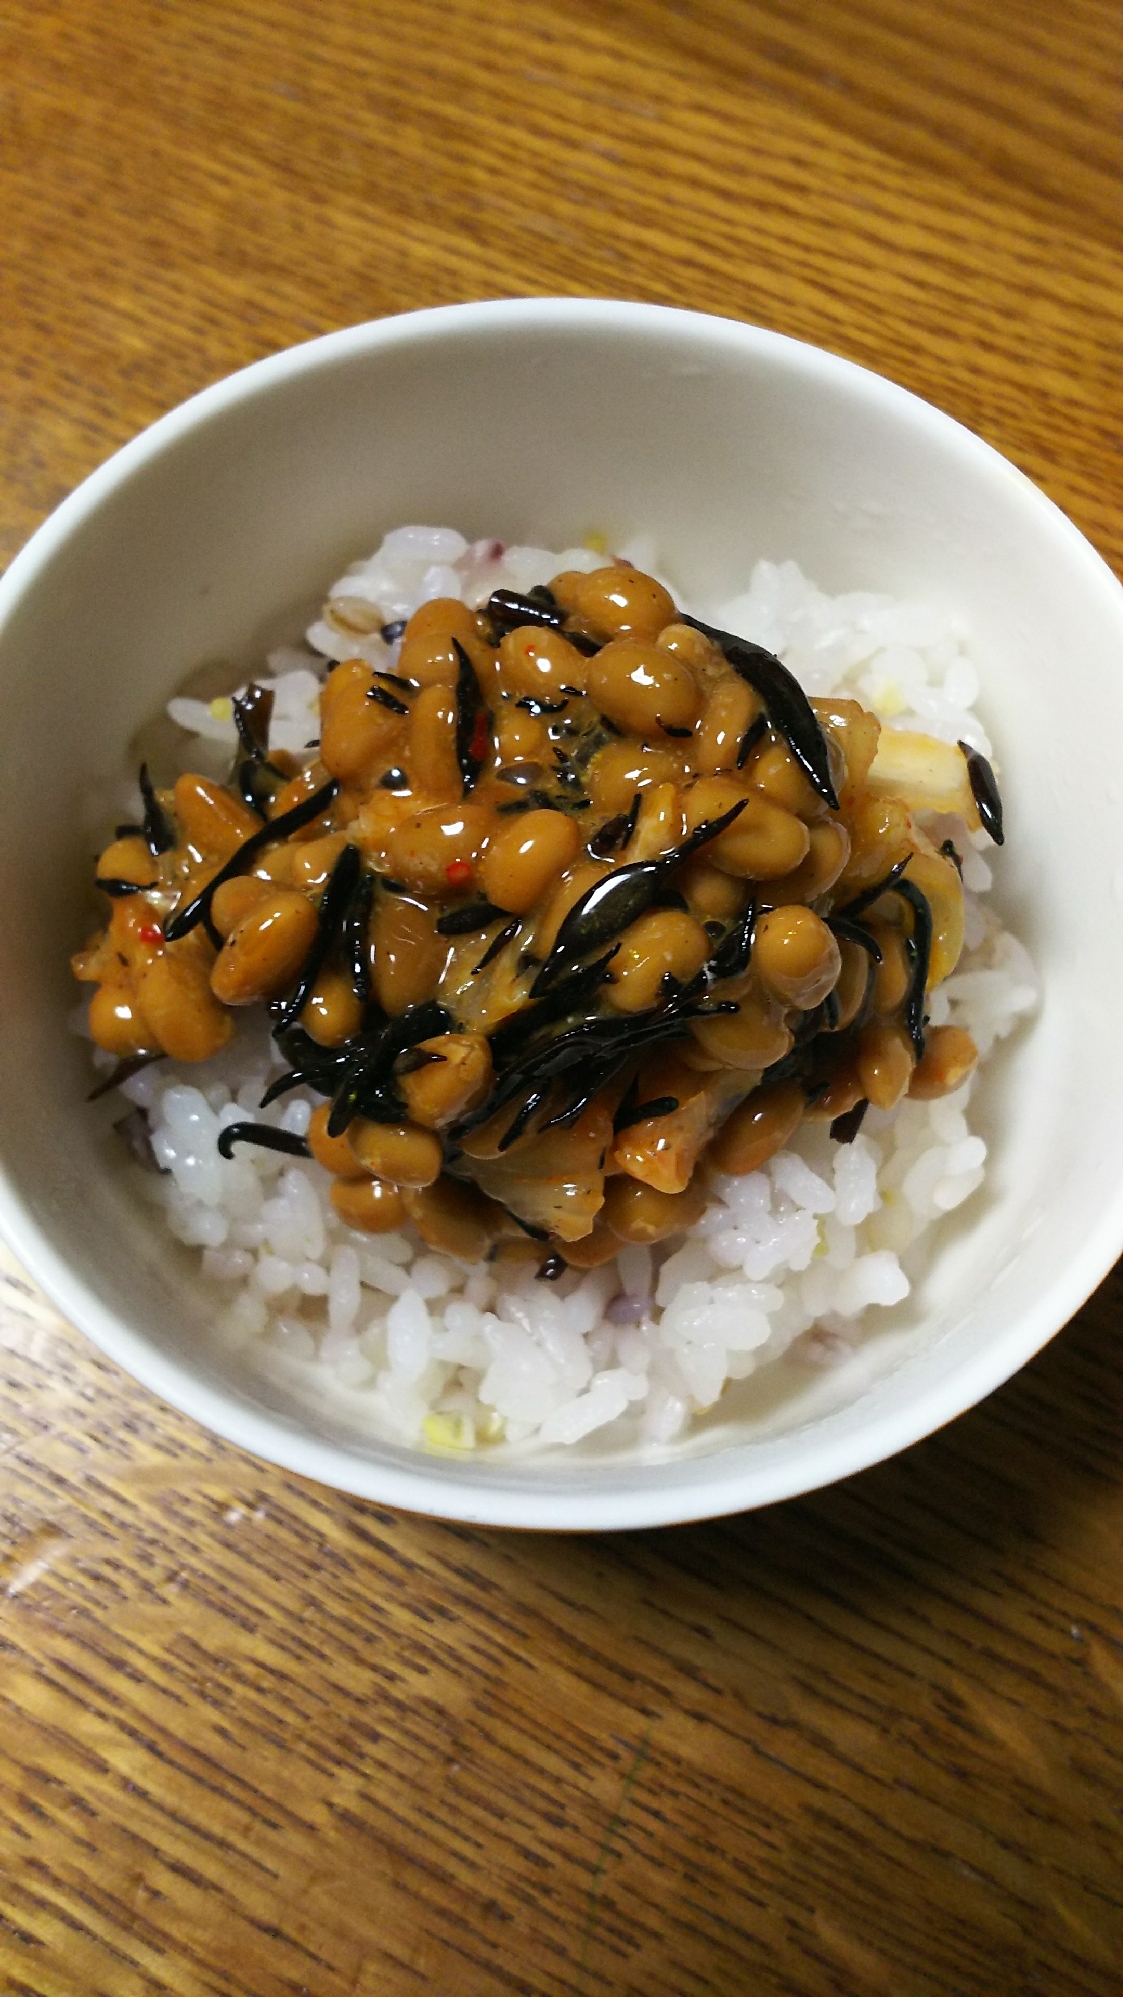 ひじき&キムチの納豆ご飯